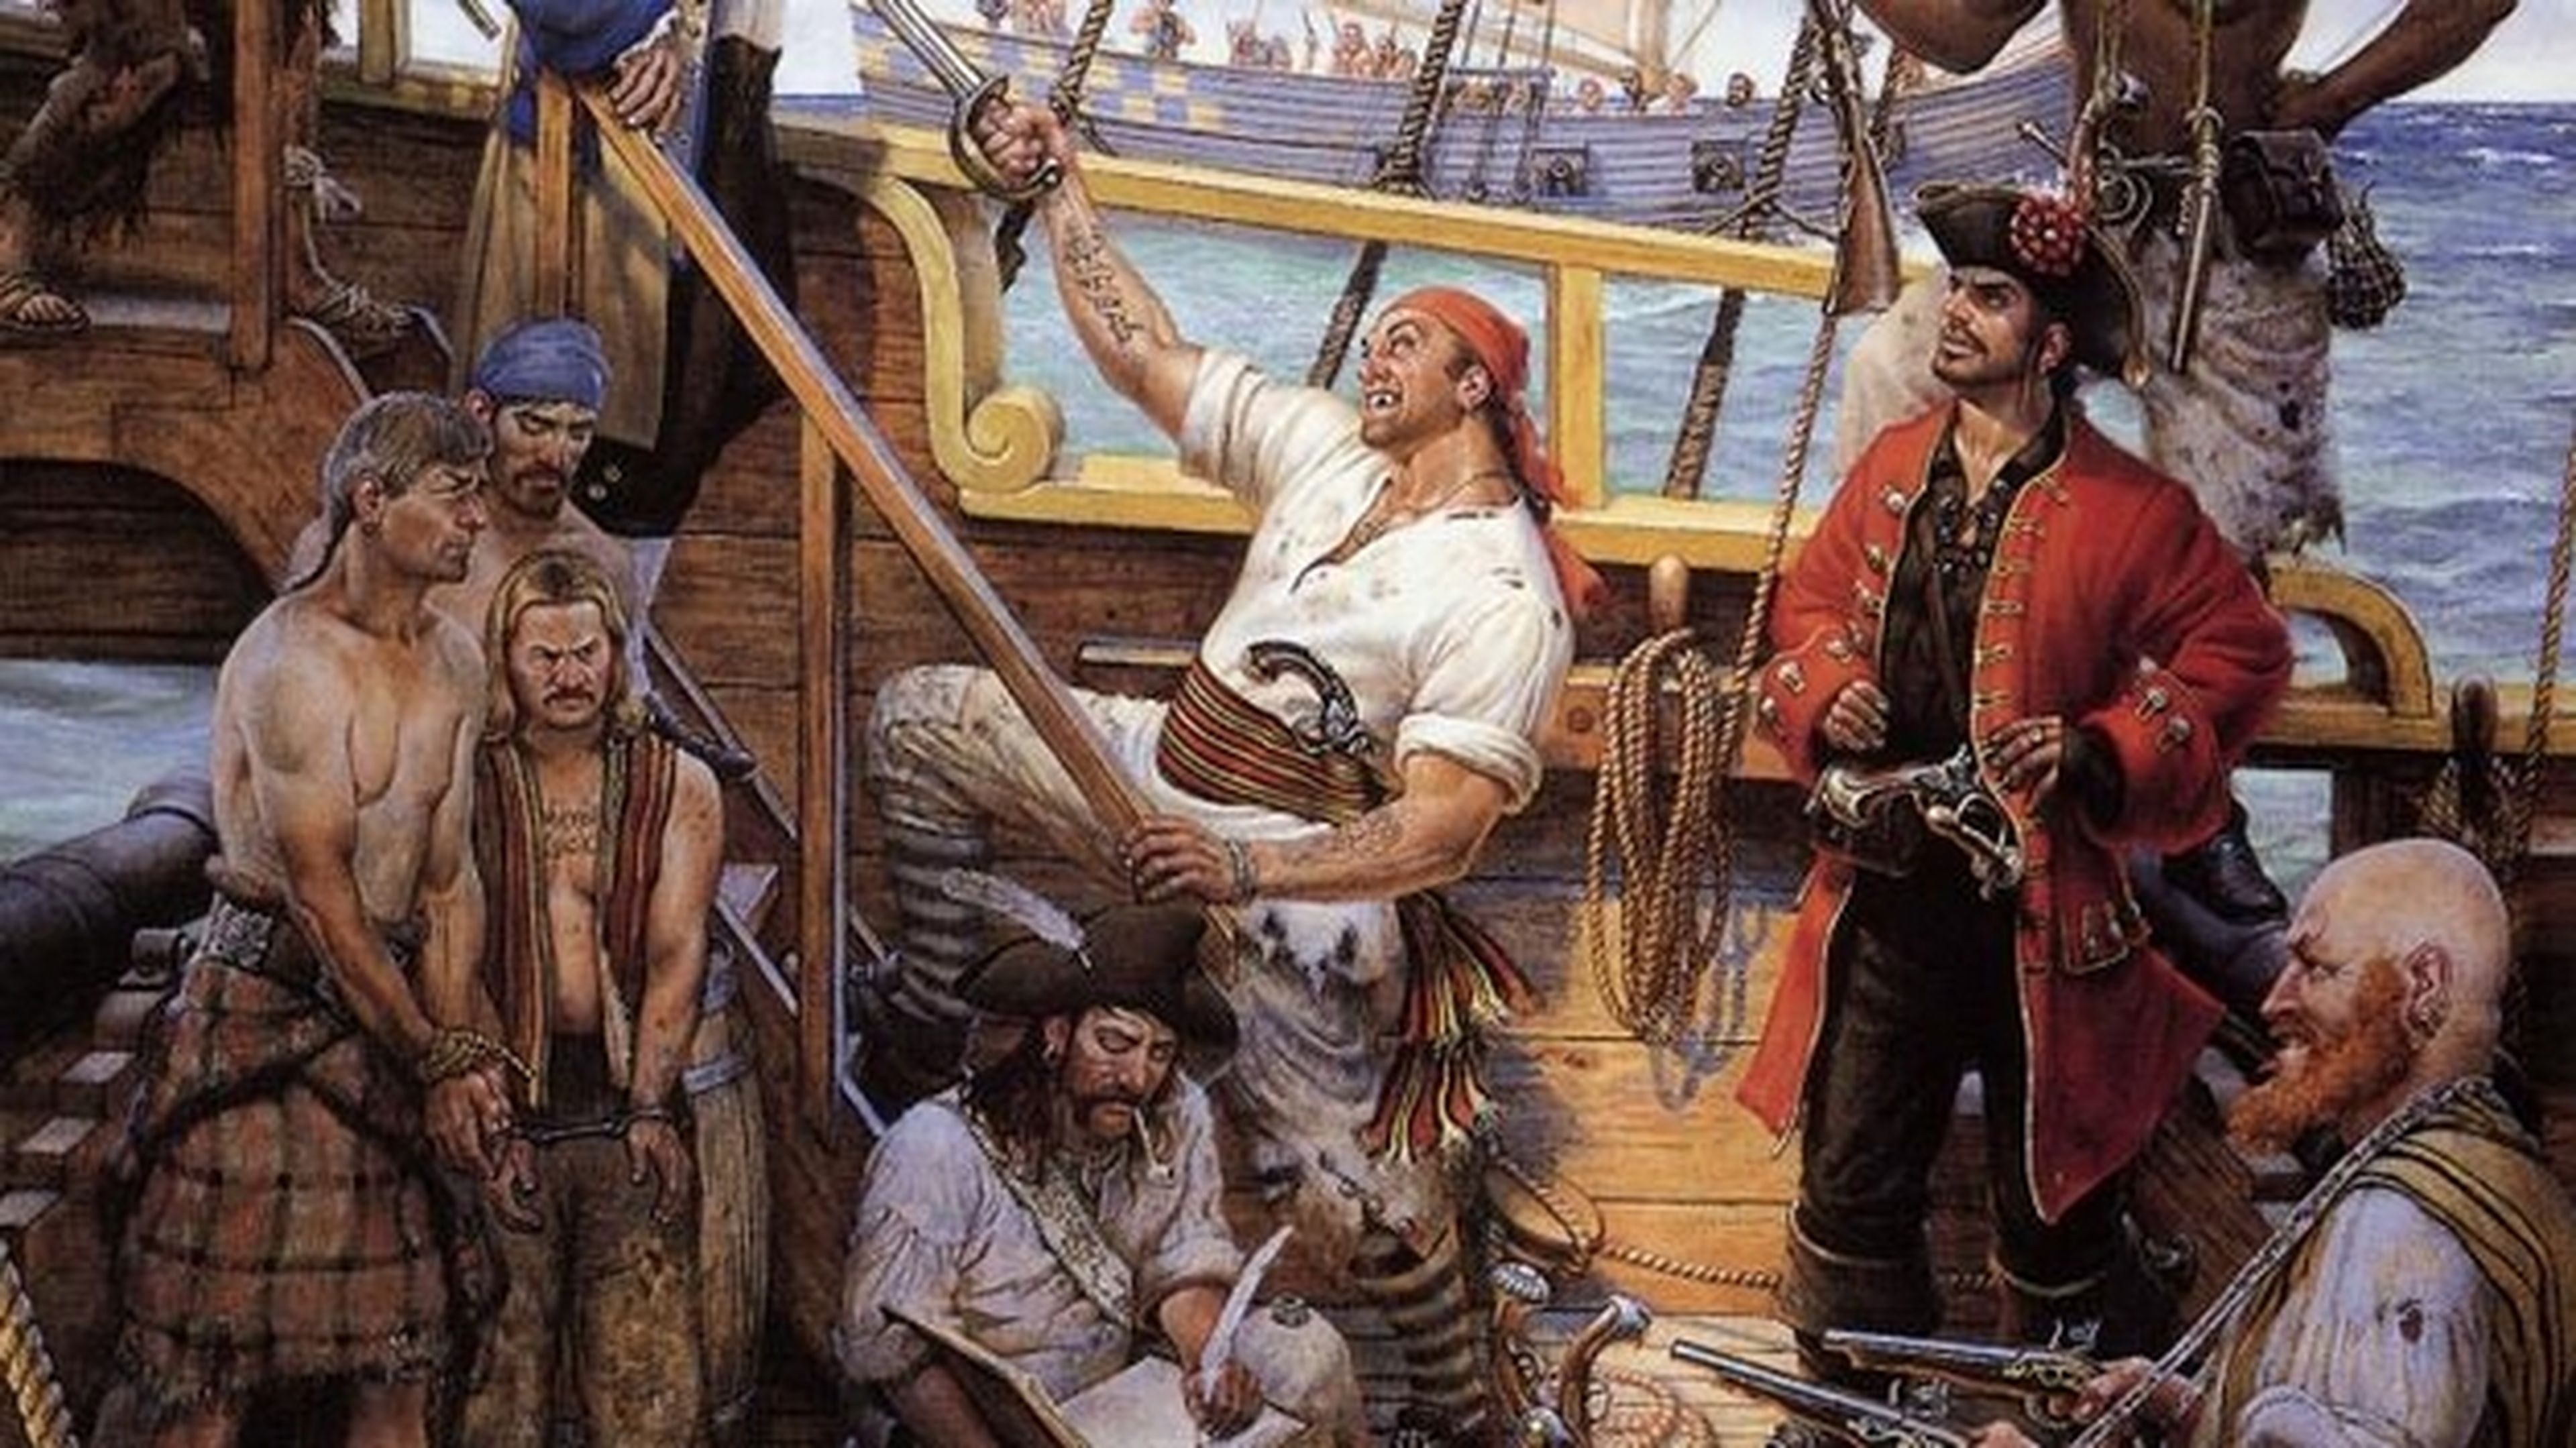 Descubren la tumba de Black Sam Bellamy, el pirata más rico de la historia